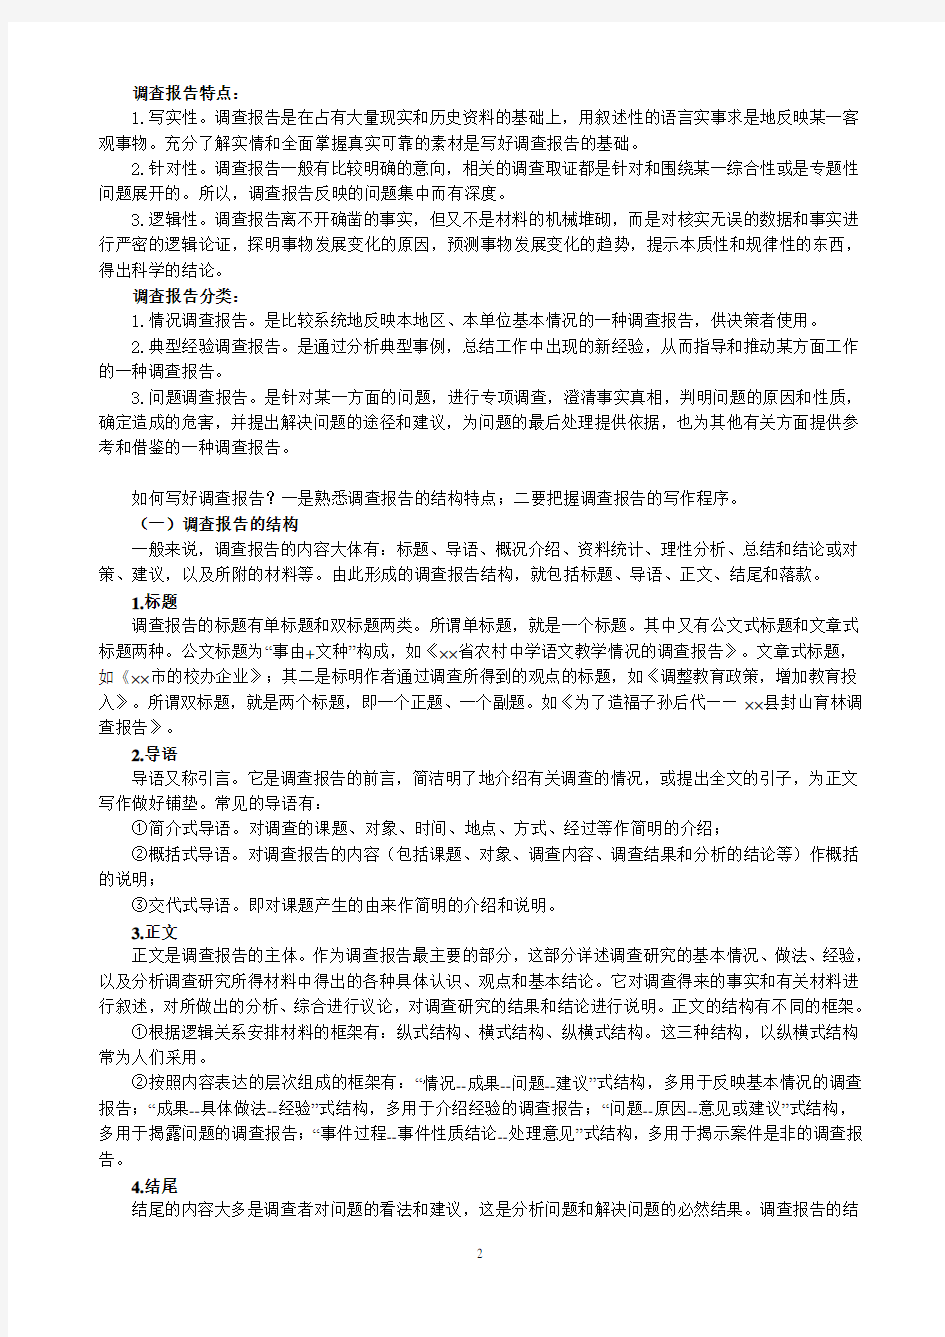 《中国近现代史纲要》社会实践调查报告的选题